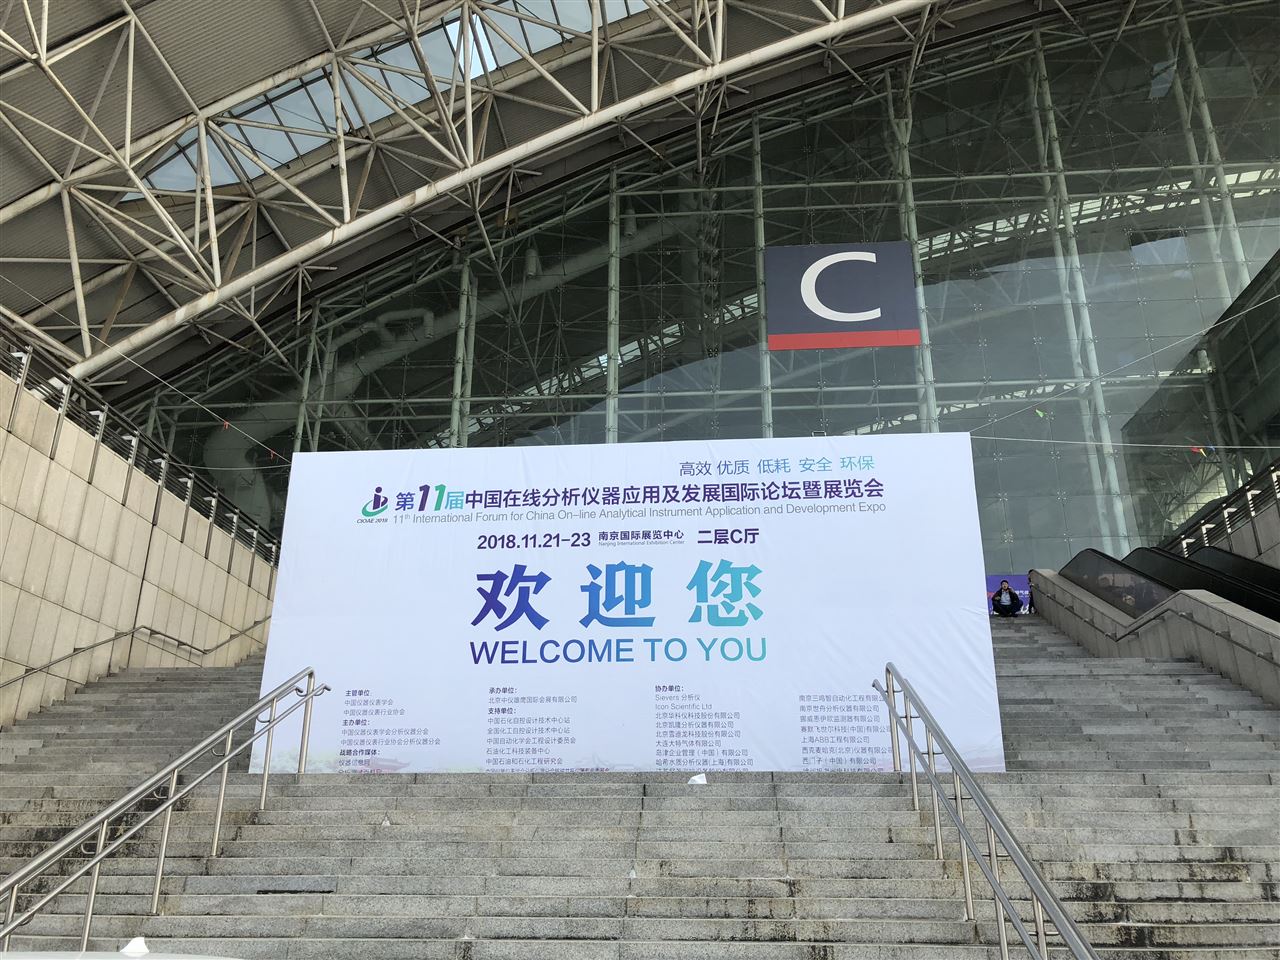 机不可失！中国仪器网邀您参加第十一届中国在线分析仪器应用及发展论坛暨展览会